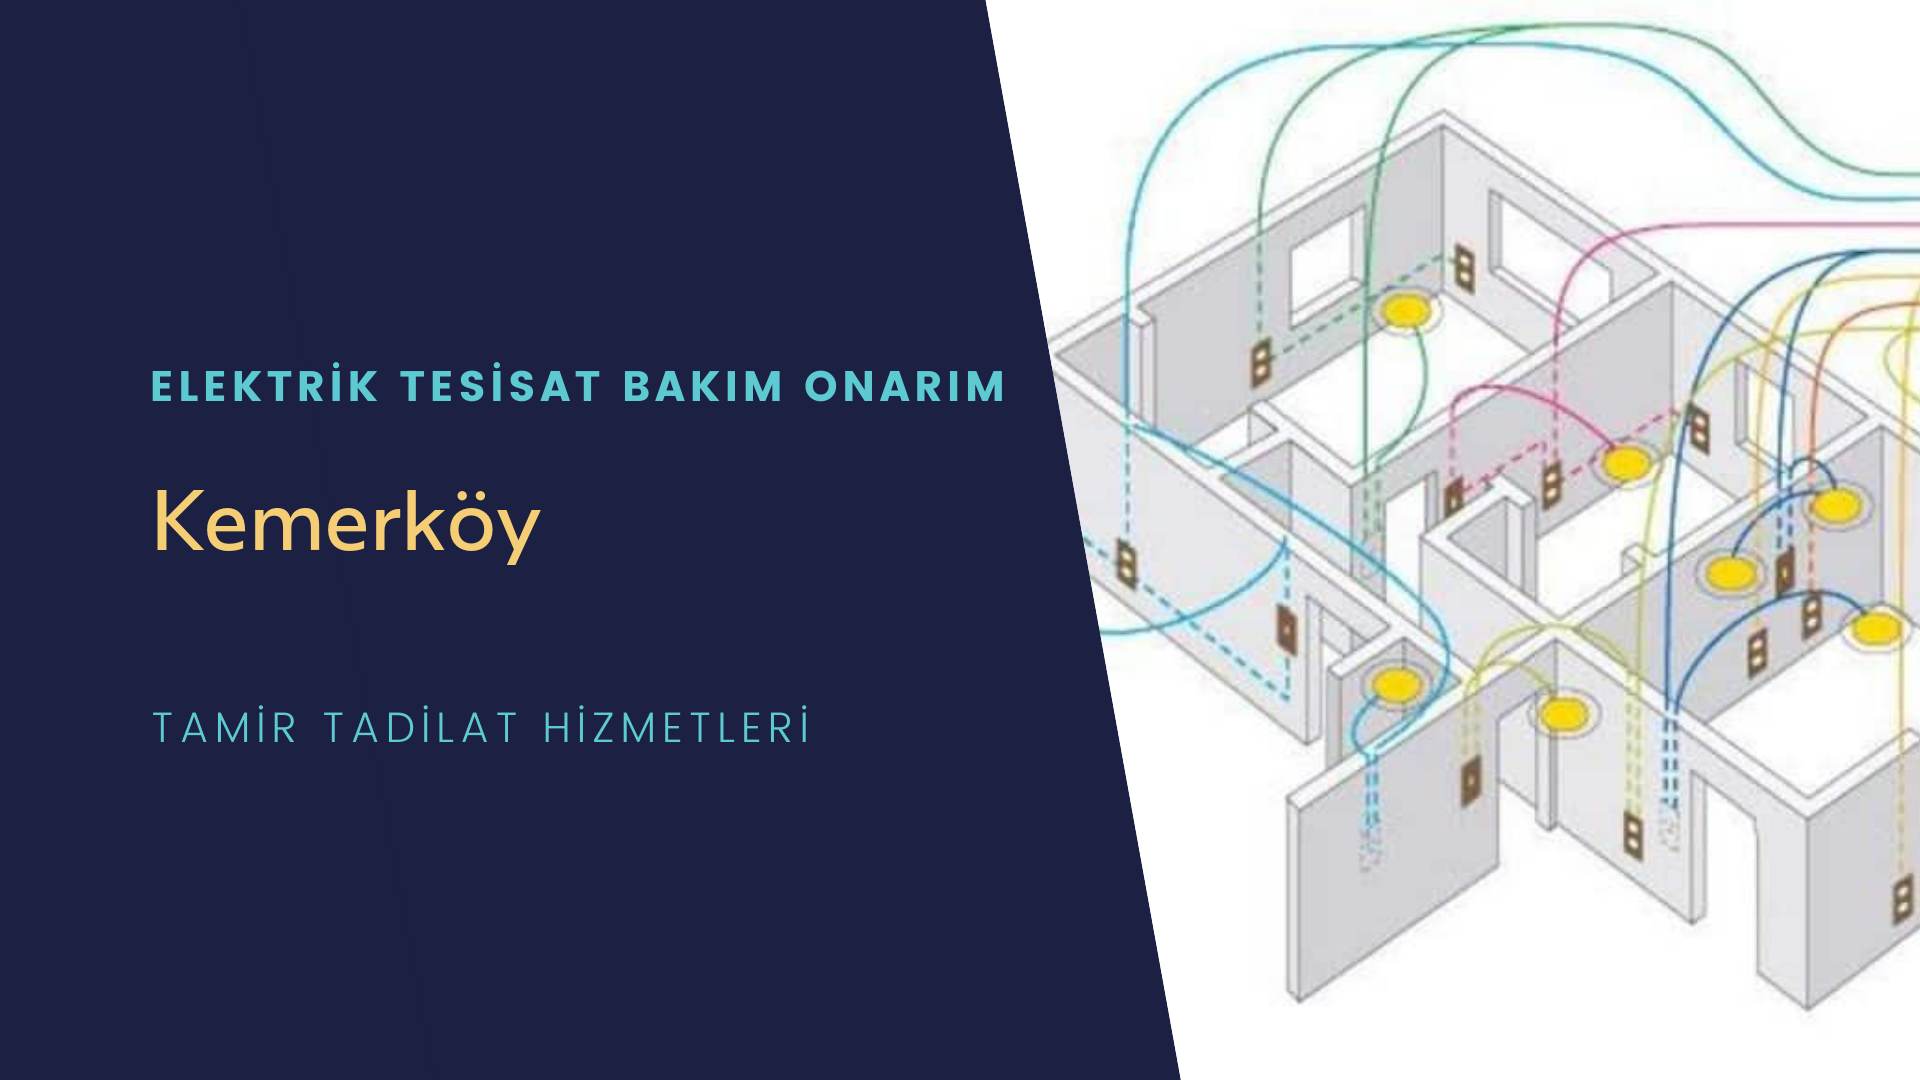 Kemerköy'de elektrik tesisatı ustalarımı arıyorsunuz doğru adrestenizi Kemerköy elektrik tesisatı ustalarımız 7/24 sizlere hizmet vermekten mutluluk duyar.